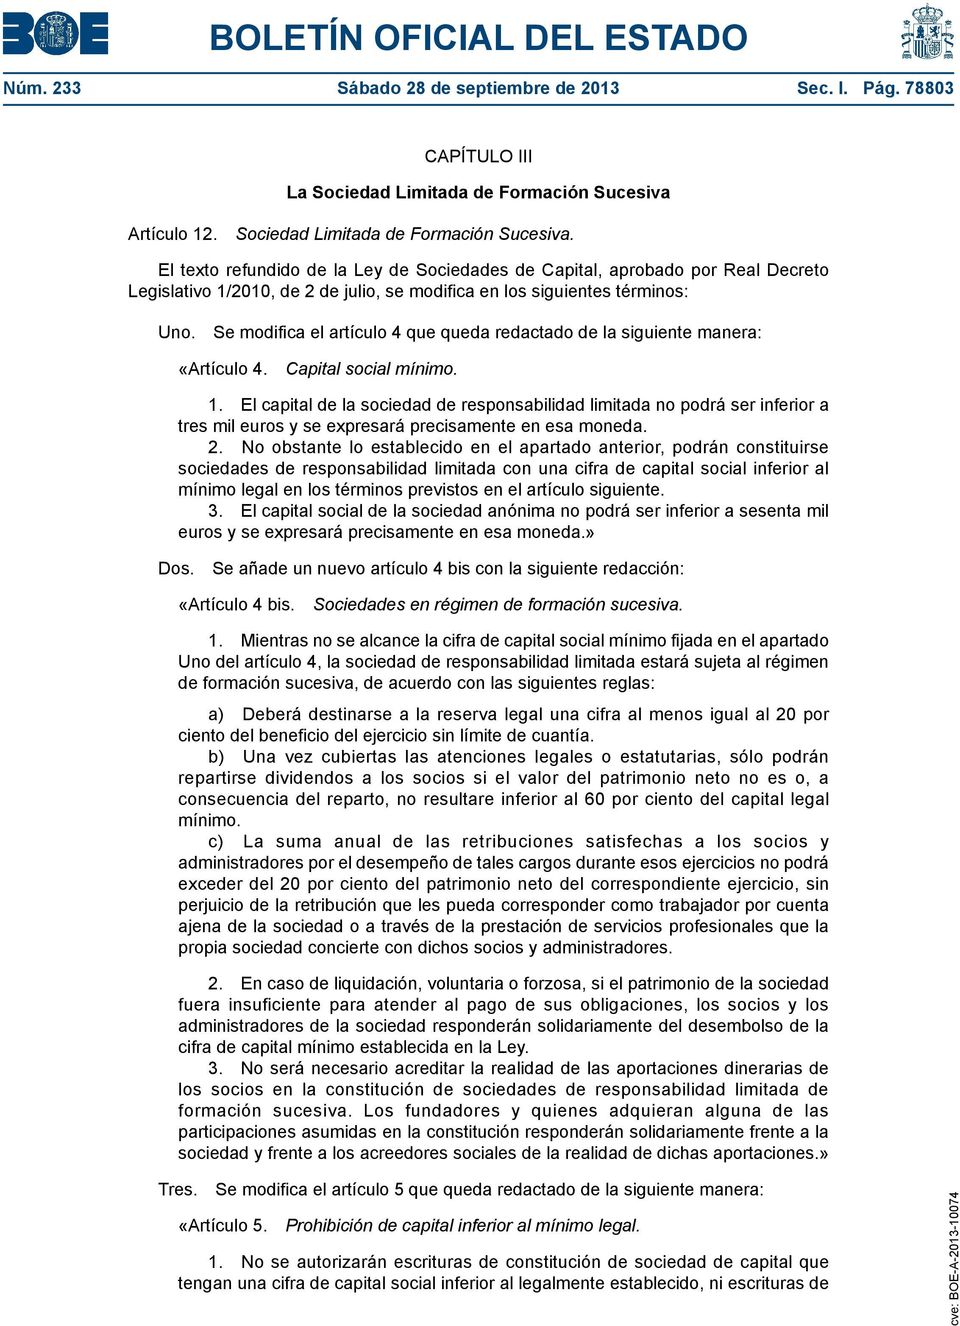 El texto refundido de la Ley de Sociedades de Capital, aprobado por Real Decreto Legislativo 1/2010, de 2 de julio, se modifica en los siguientes términos: Uno.